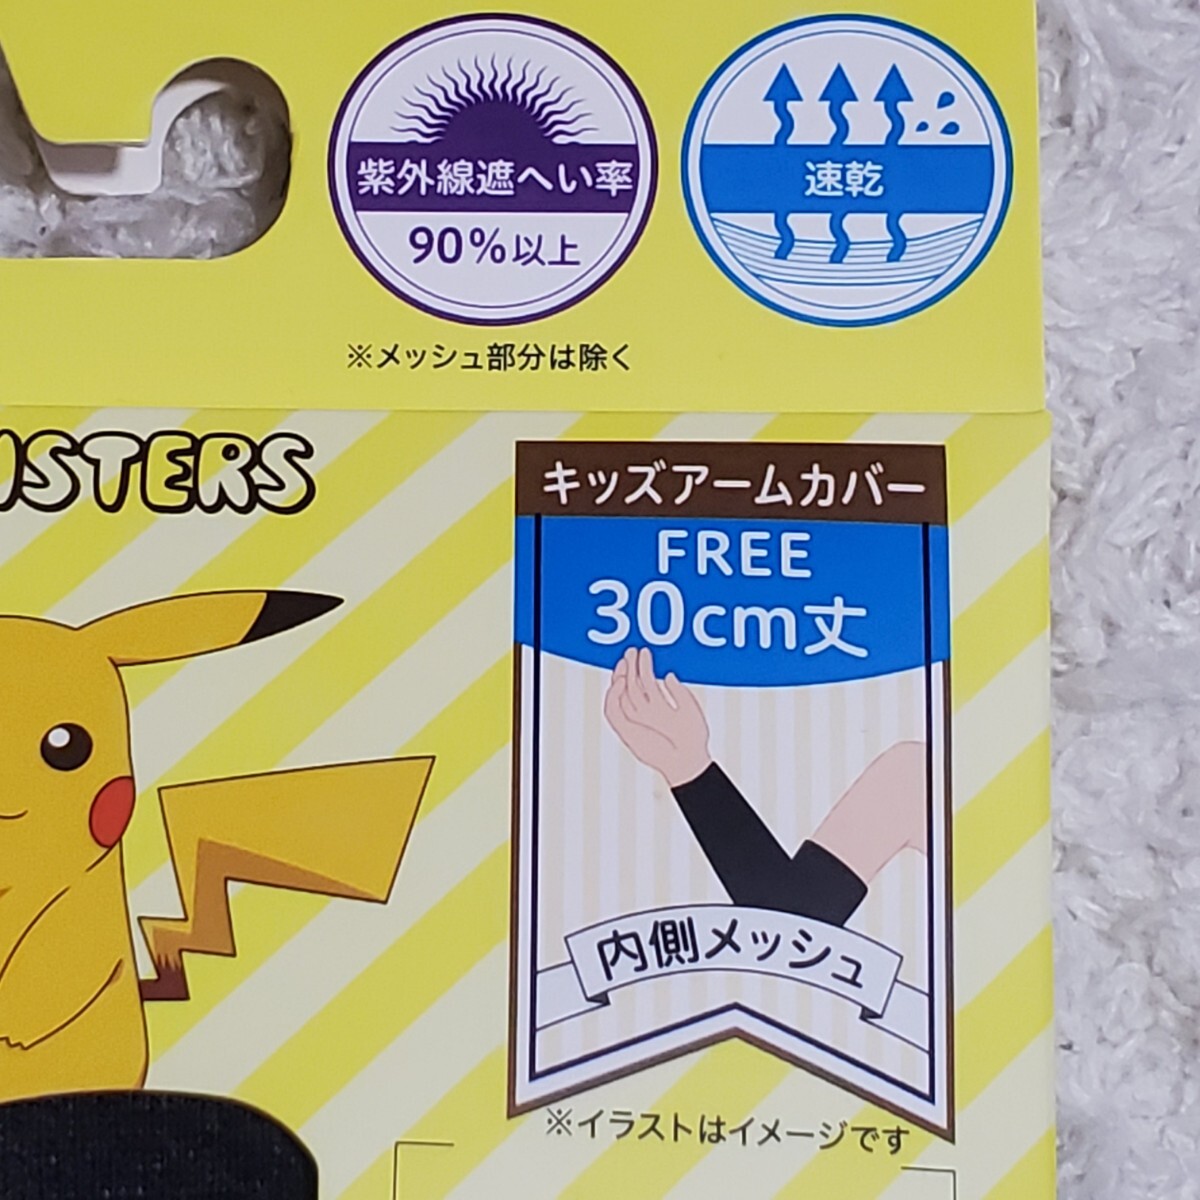  Pokemon Пикачу скорость .UV cut гетры для рук новый товар 2 позиций комплект Kids ребенок ... свободный размер Pocket Monster выгоревший на солнце участок ультрафиолетовые лучи меры 